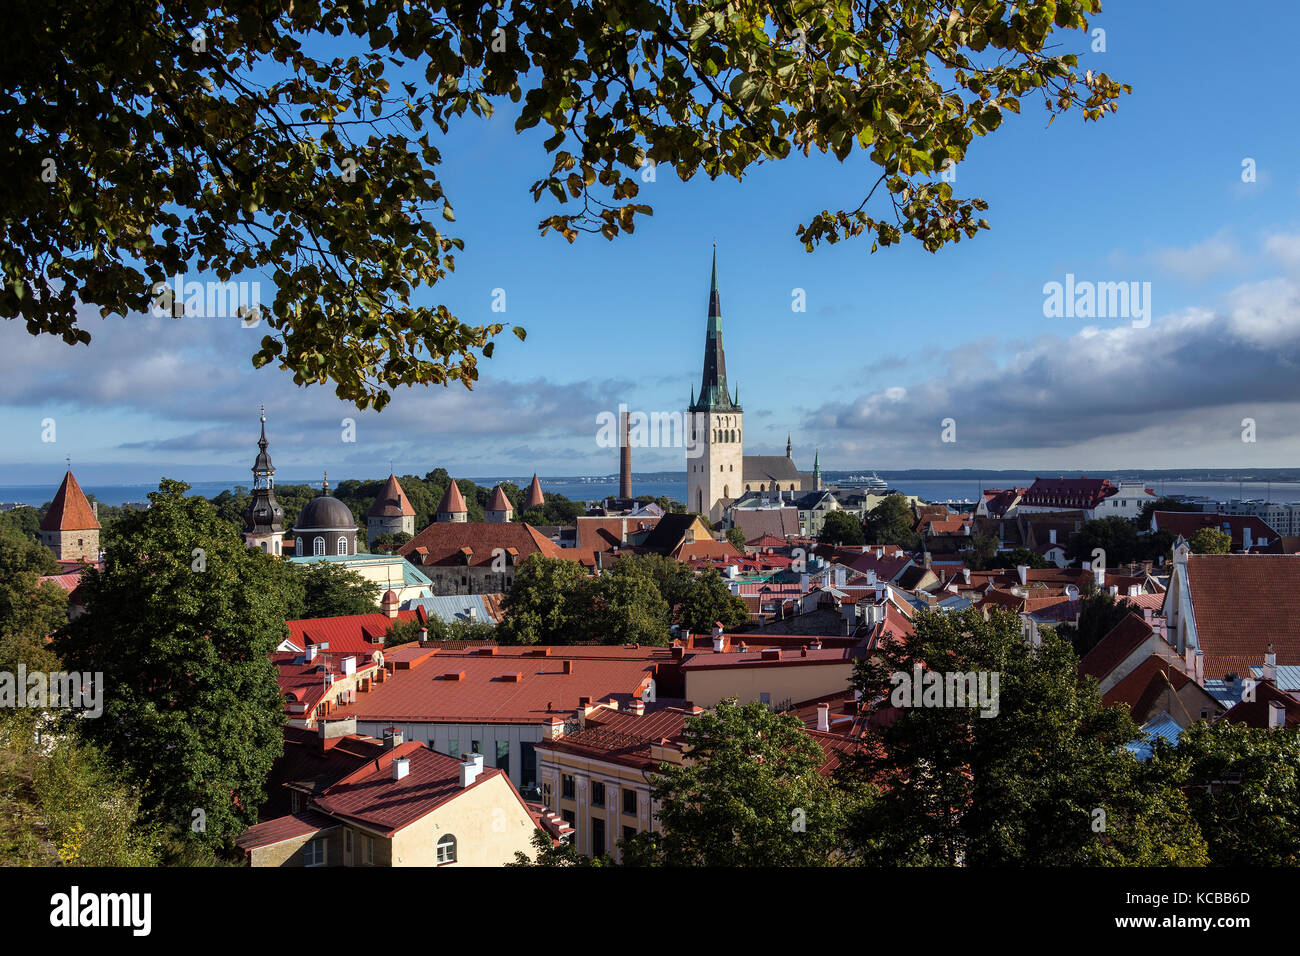 Die Stadt Tallinn in Estland. Die Altstadt ist eine der am besten erhaltenen mittelalterlichen Städte in Europa und gehört zum Unesco Weltkulturerbe. Stockfoto